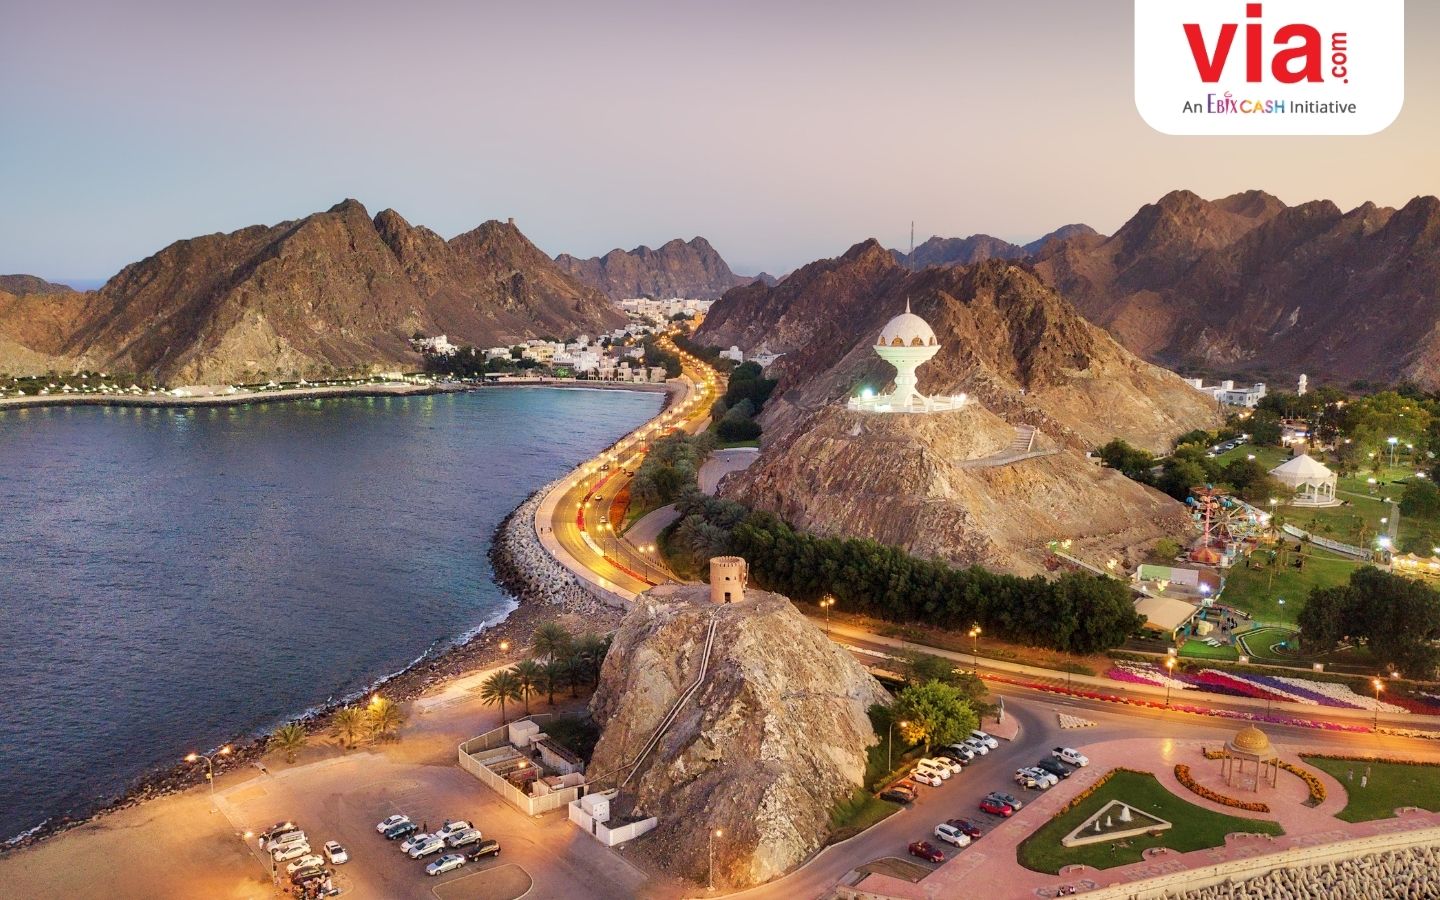 Terbang Seru ke Destinasi Eksotis Dunia bersama Oman Air: 3 Destinasi Reccommended